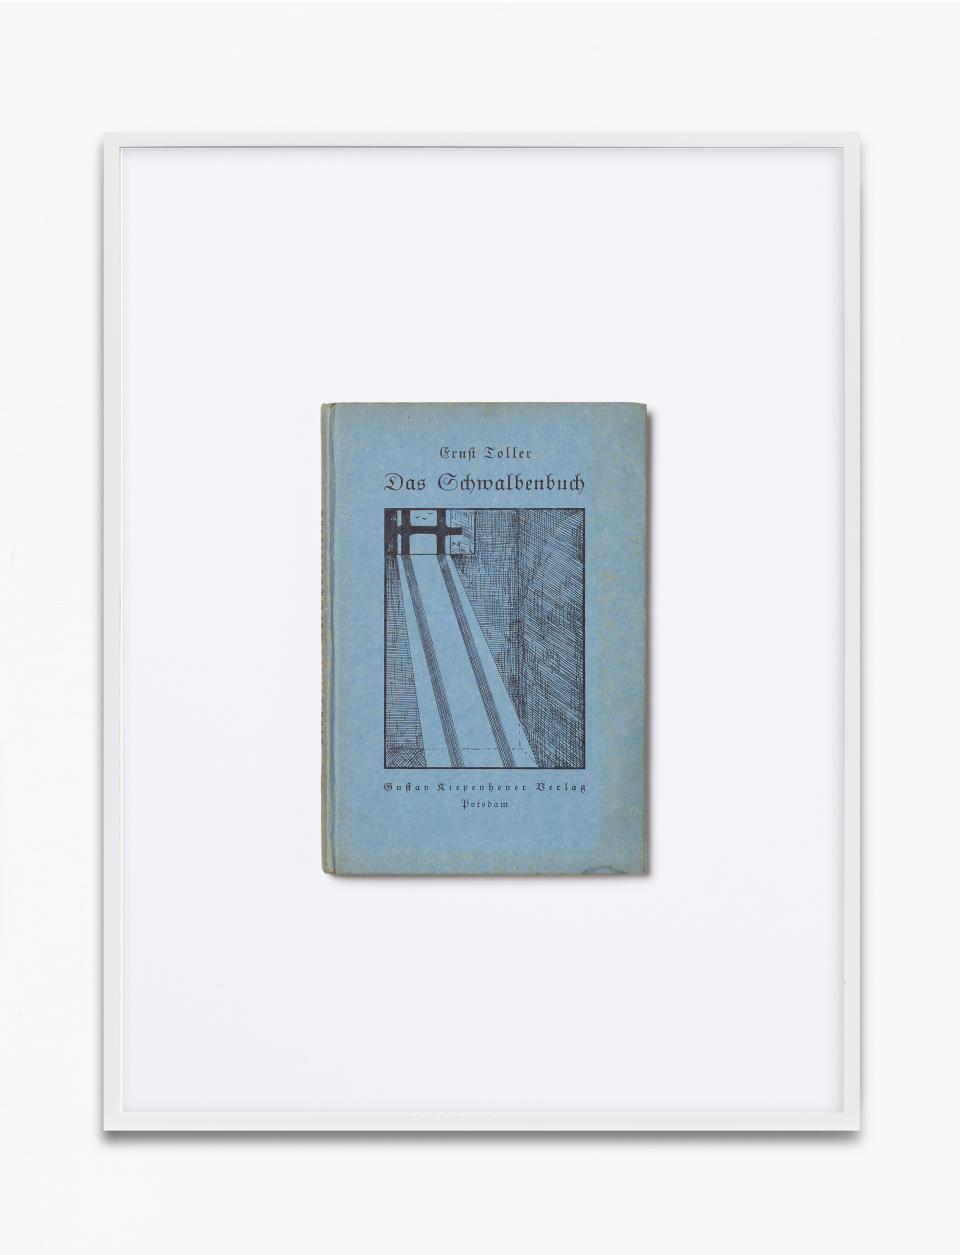 Buchcover von «Das Schwalbenbuch» von Ernst Toller in einem Bilderrahmen